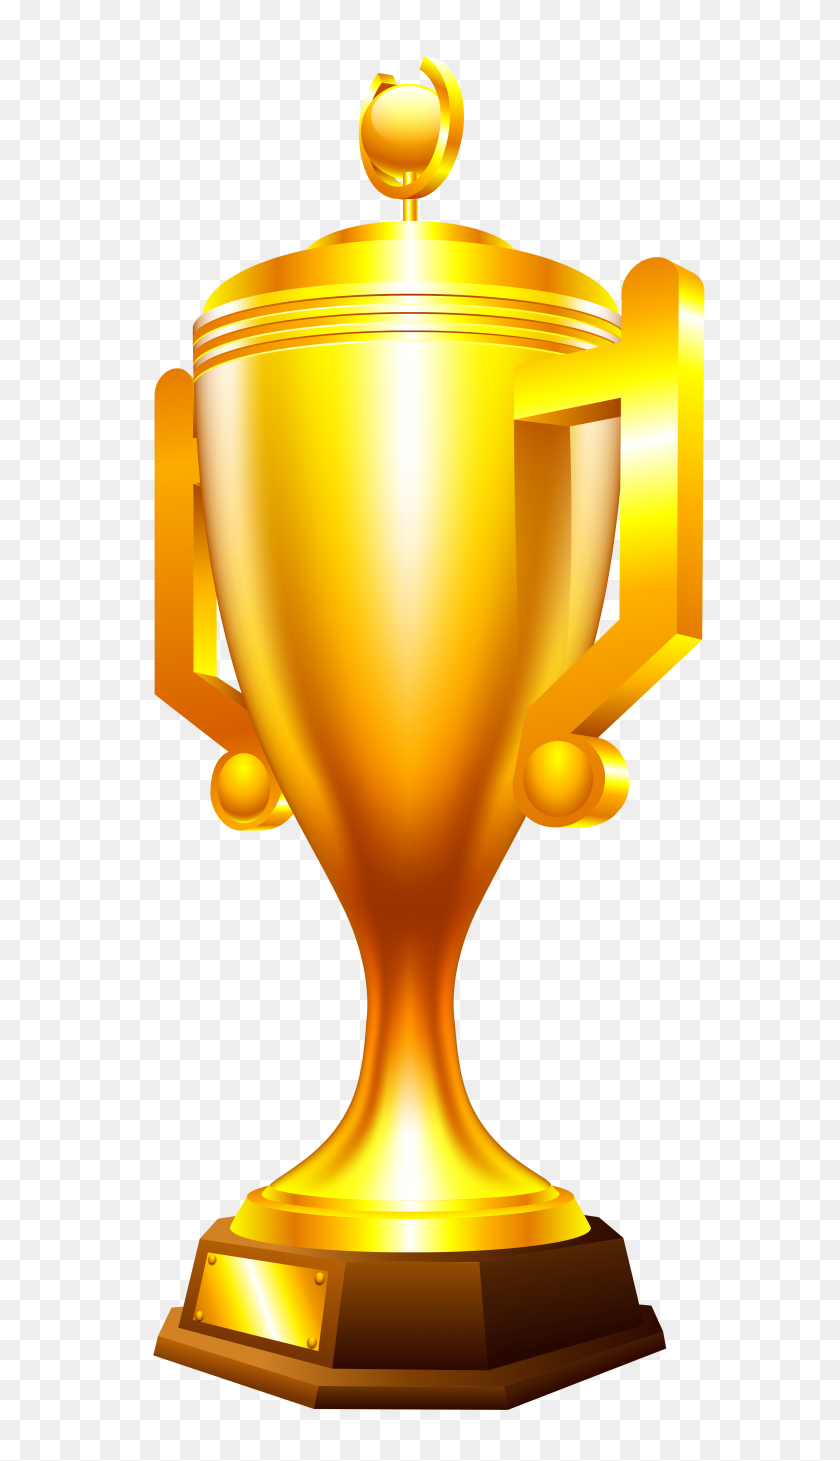 2879x5174 Transparent Gold Cup Trophy - Trophy Clipart Transparent